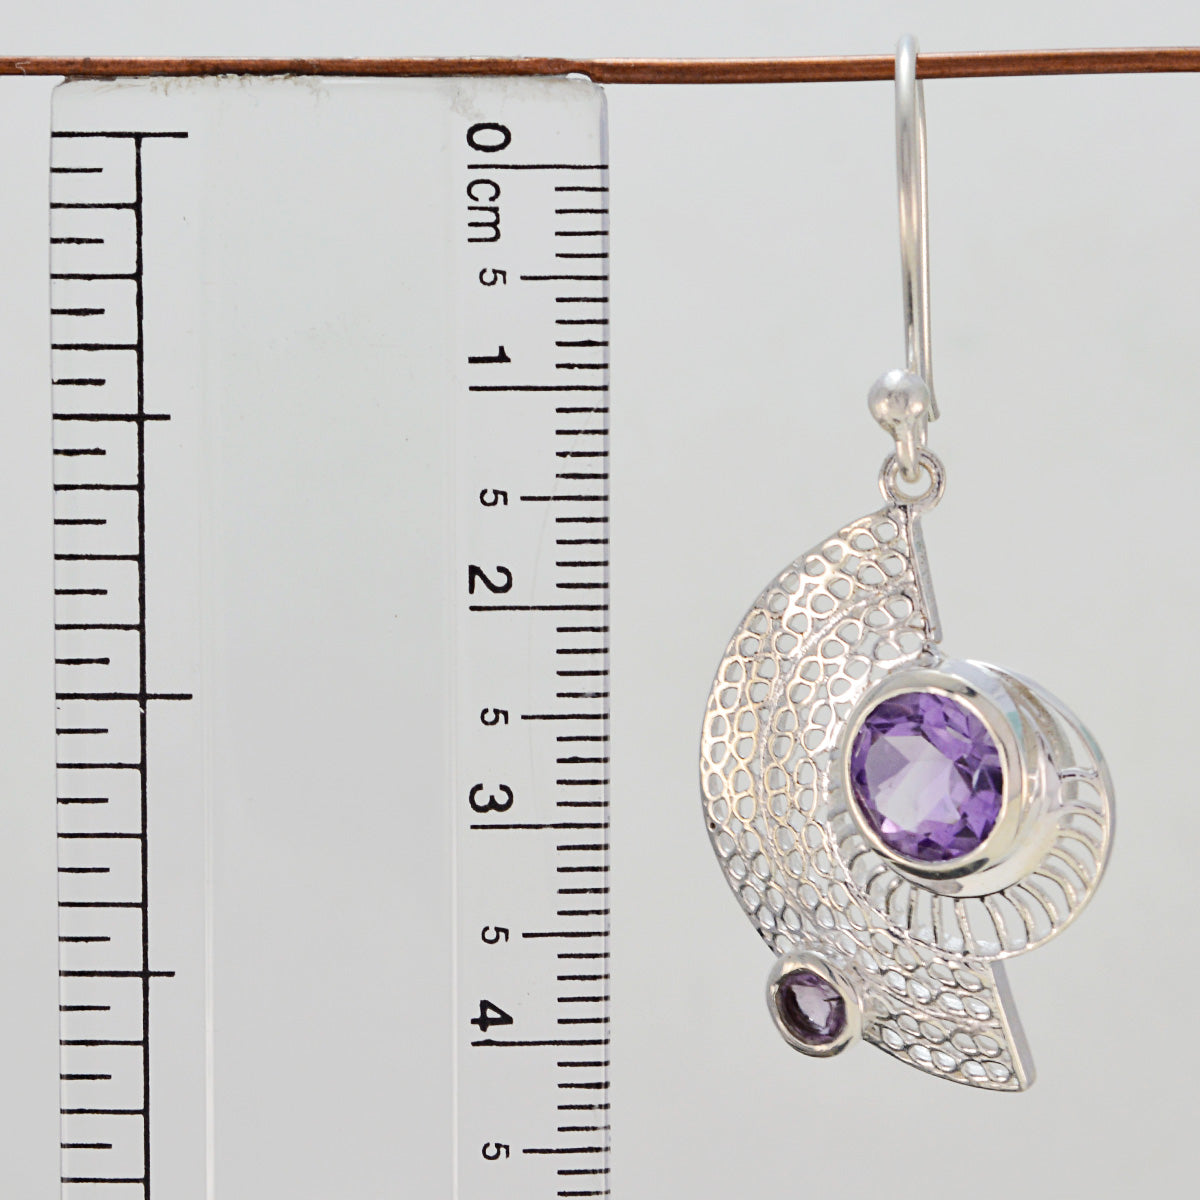 Riyo Good Gemstones round Faceted Purple Amethyst Silver Earrings gift for wedding